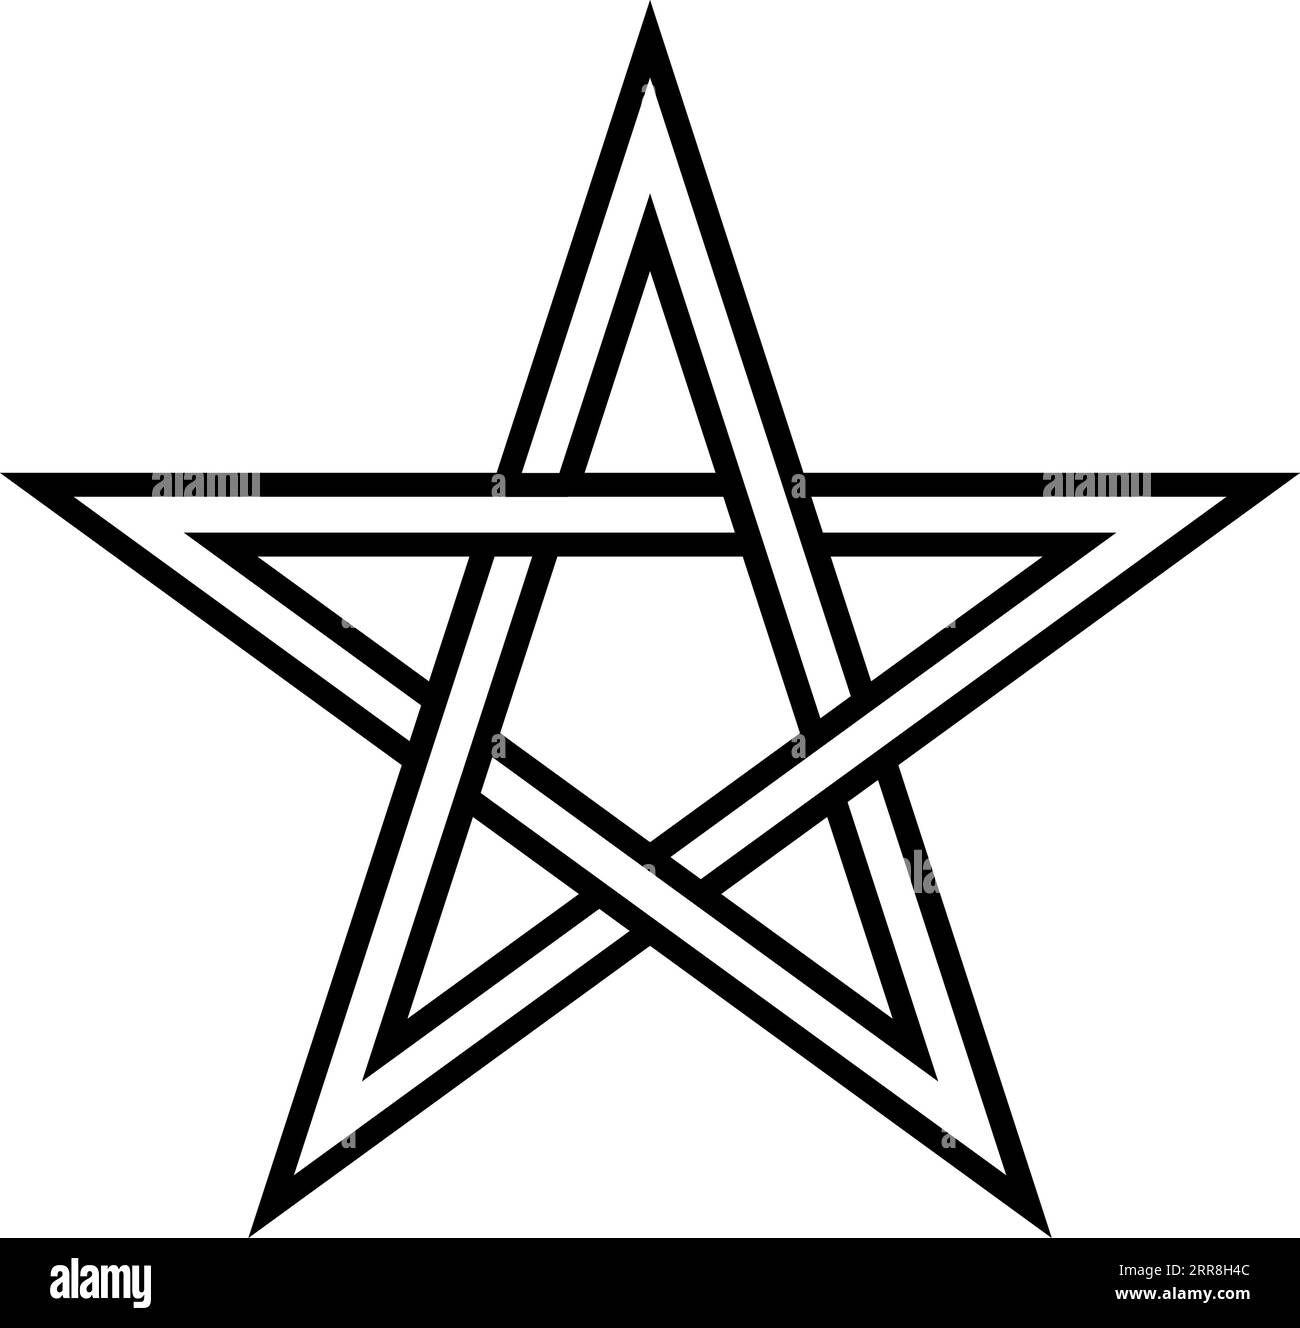 pentacle transparent, pentagonal star, sign magic Stock Vector